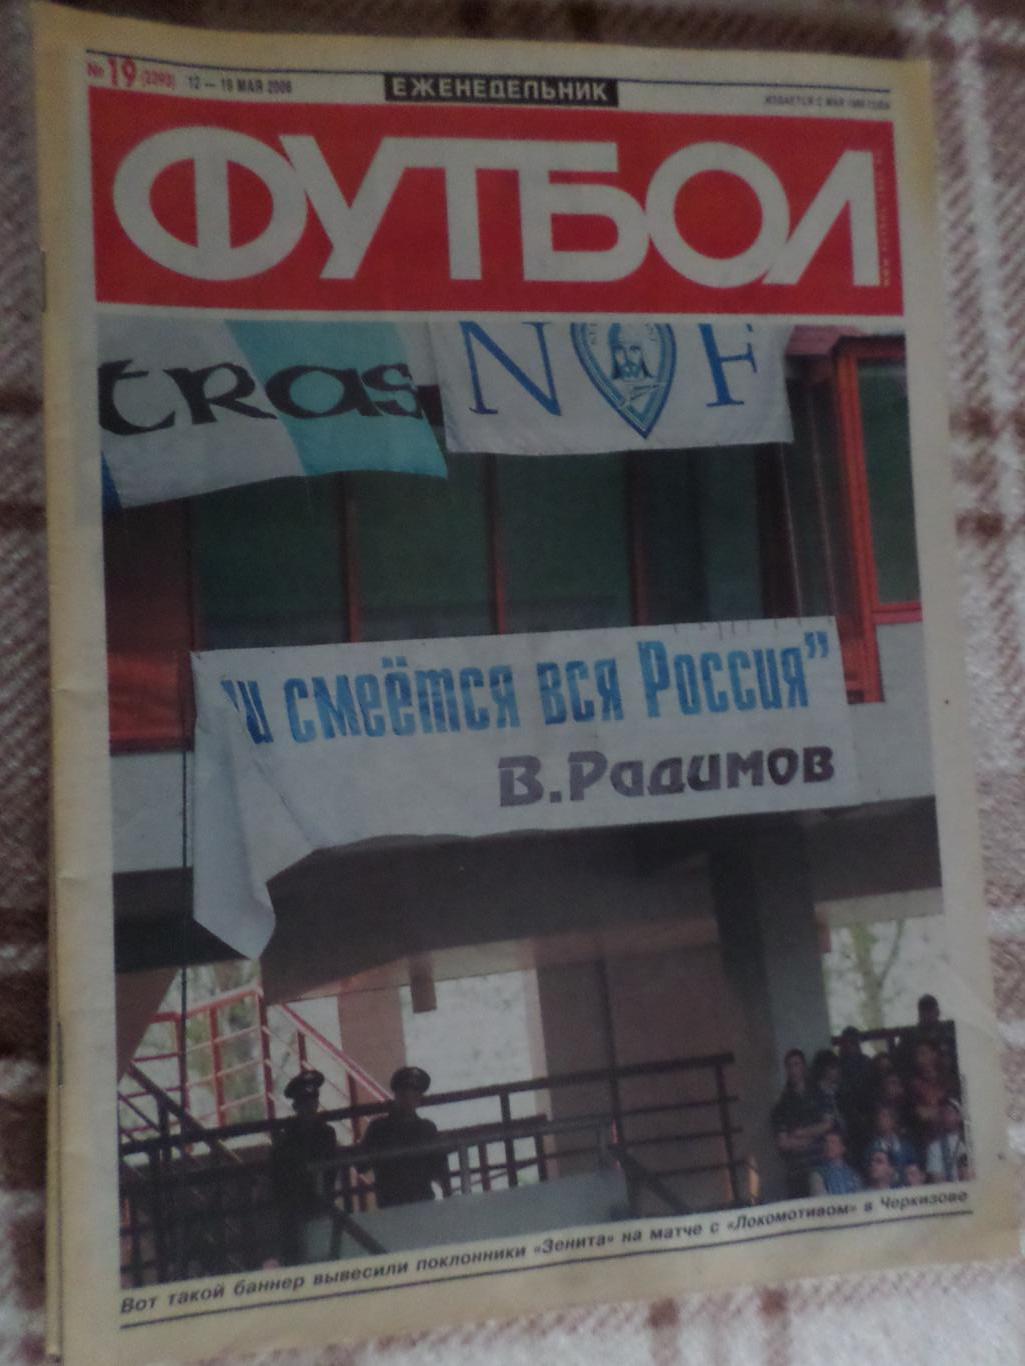 Еженедельник Футбол ( Москва) номер 19, 2006 г